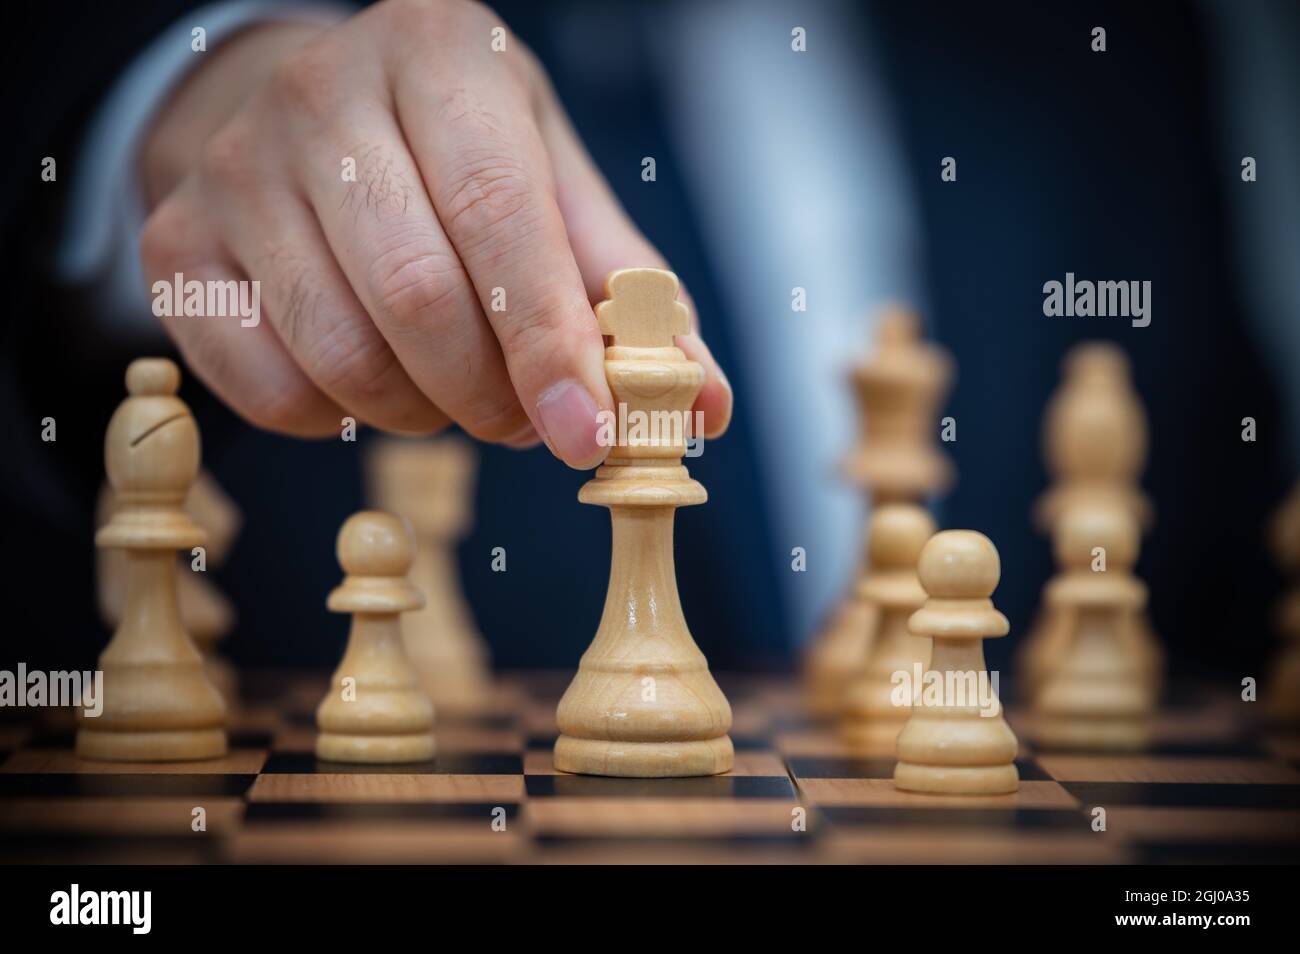 Ein Geschäftsmann in einem Anzug hält einen Schachkönig. Stockfoto